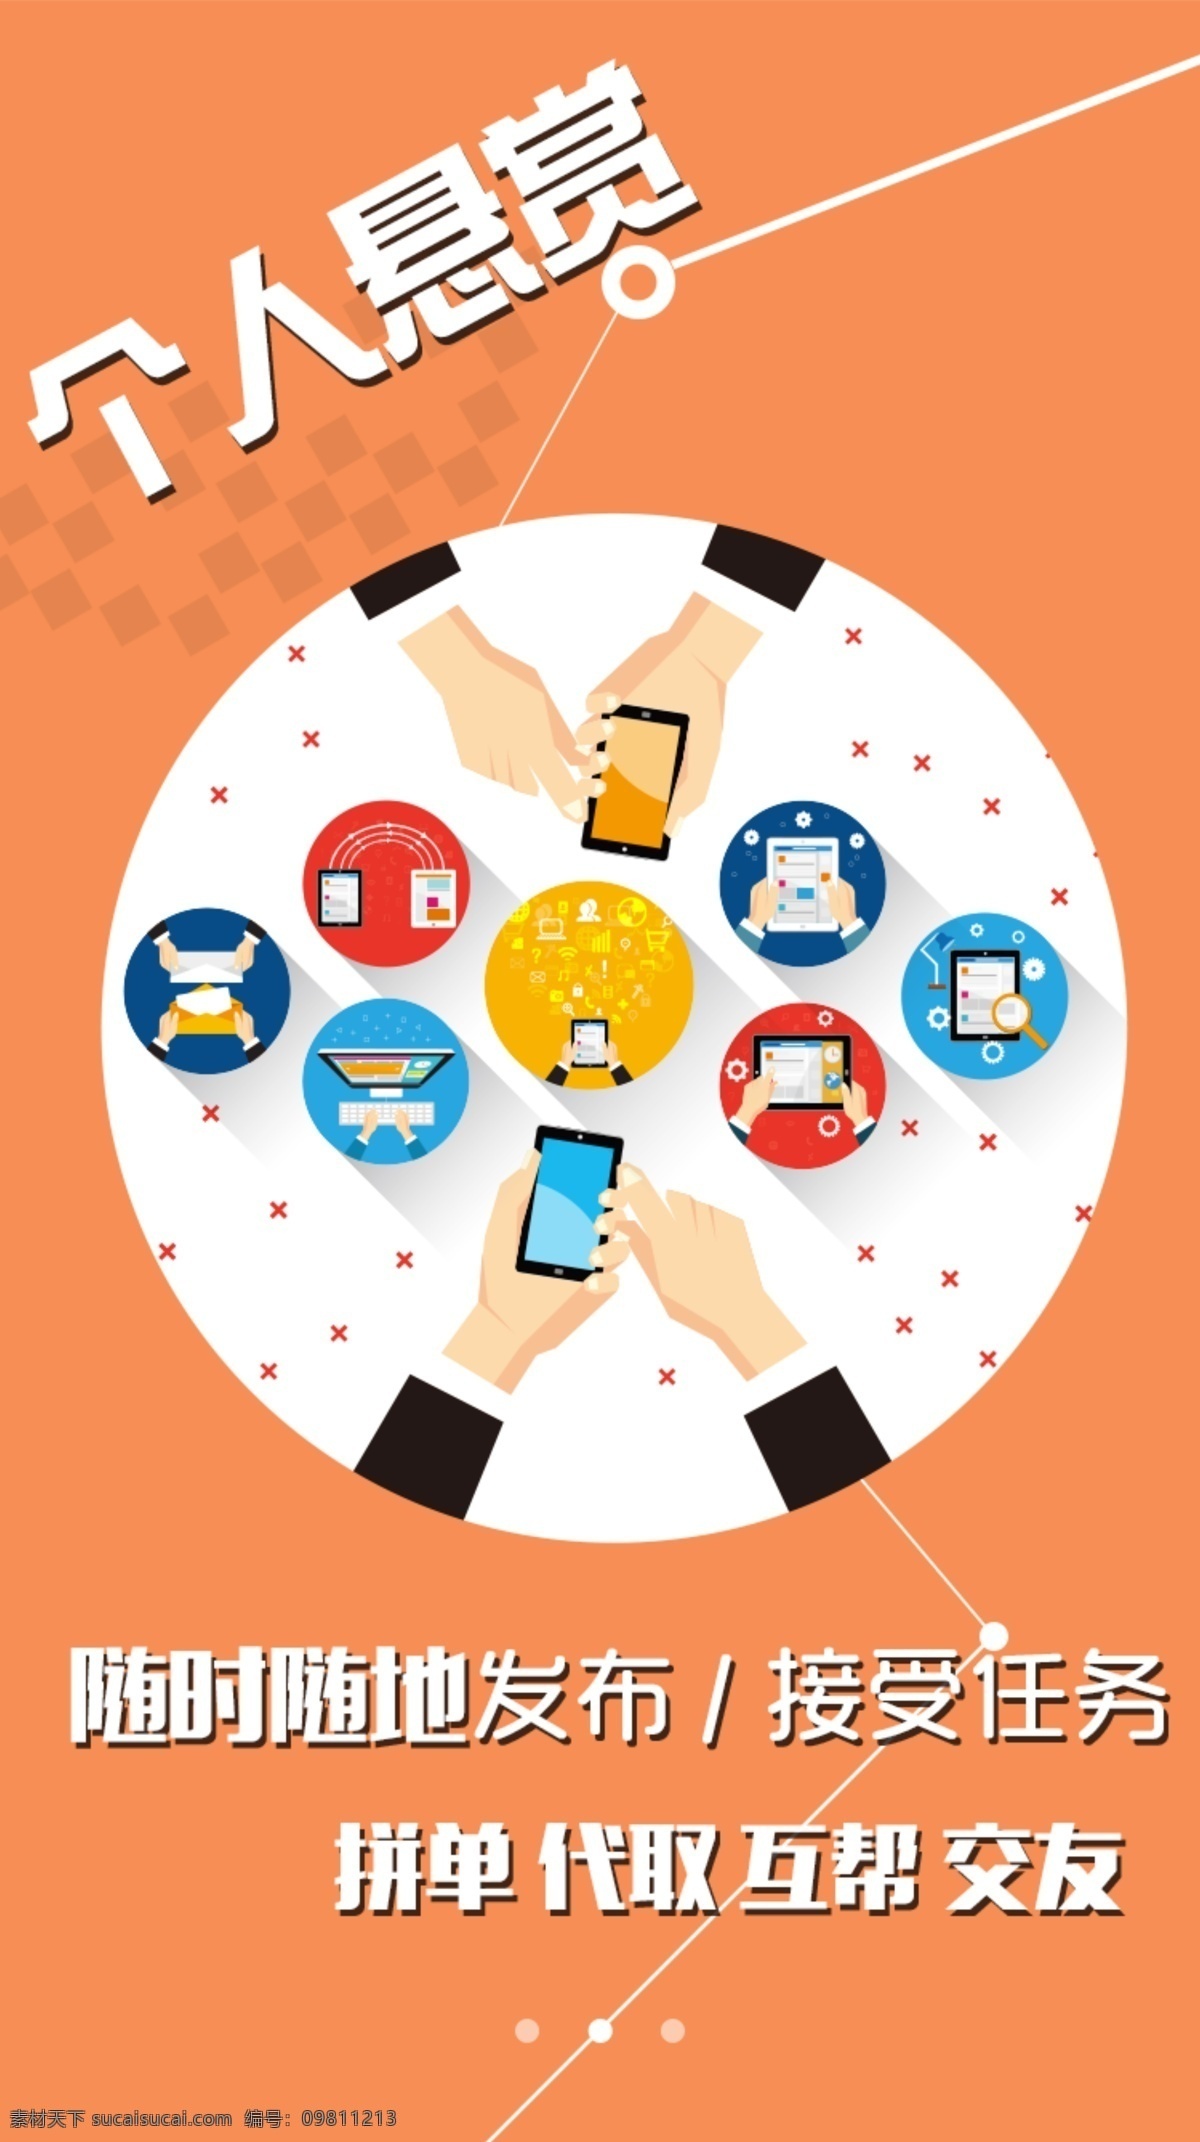 app 启动 页面 橙色 社交 扁平化 信息化 手机